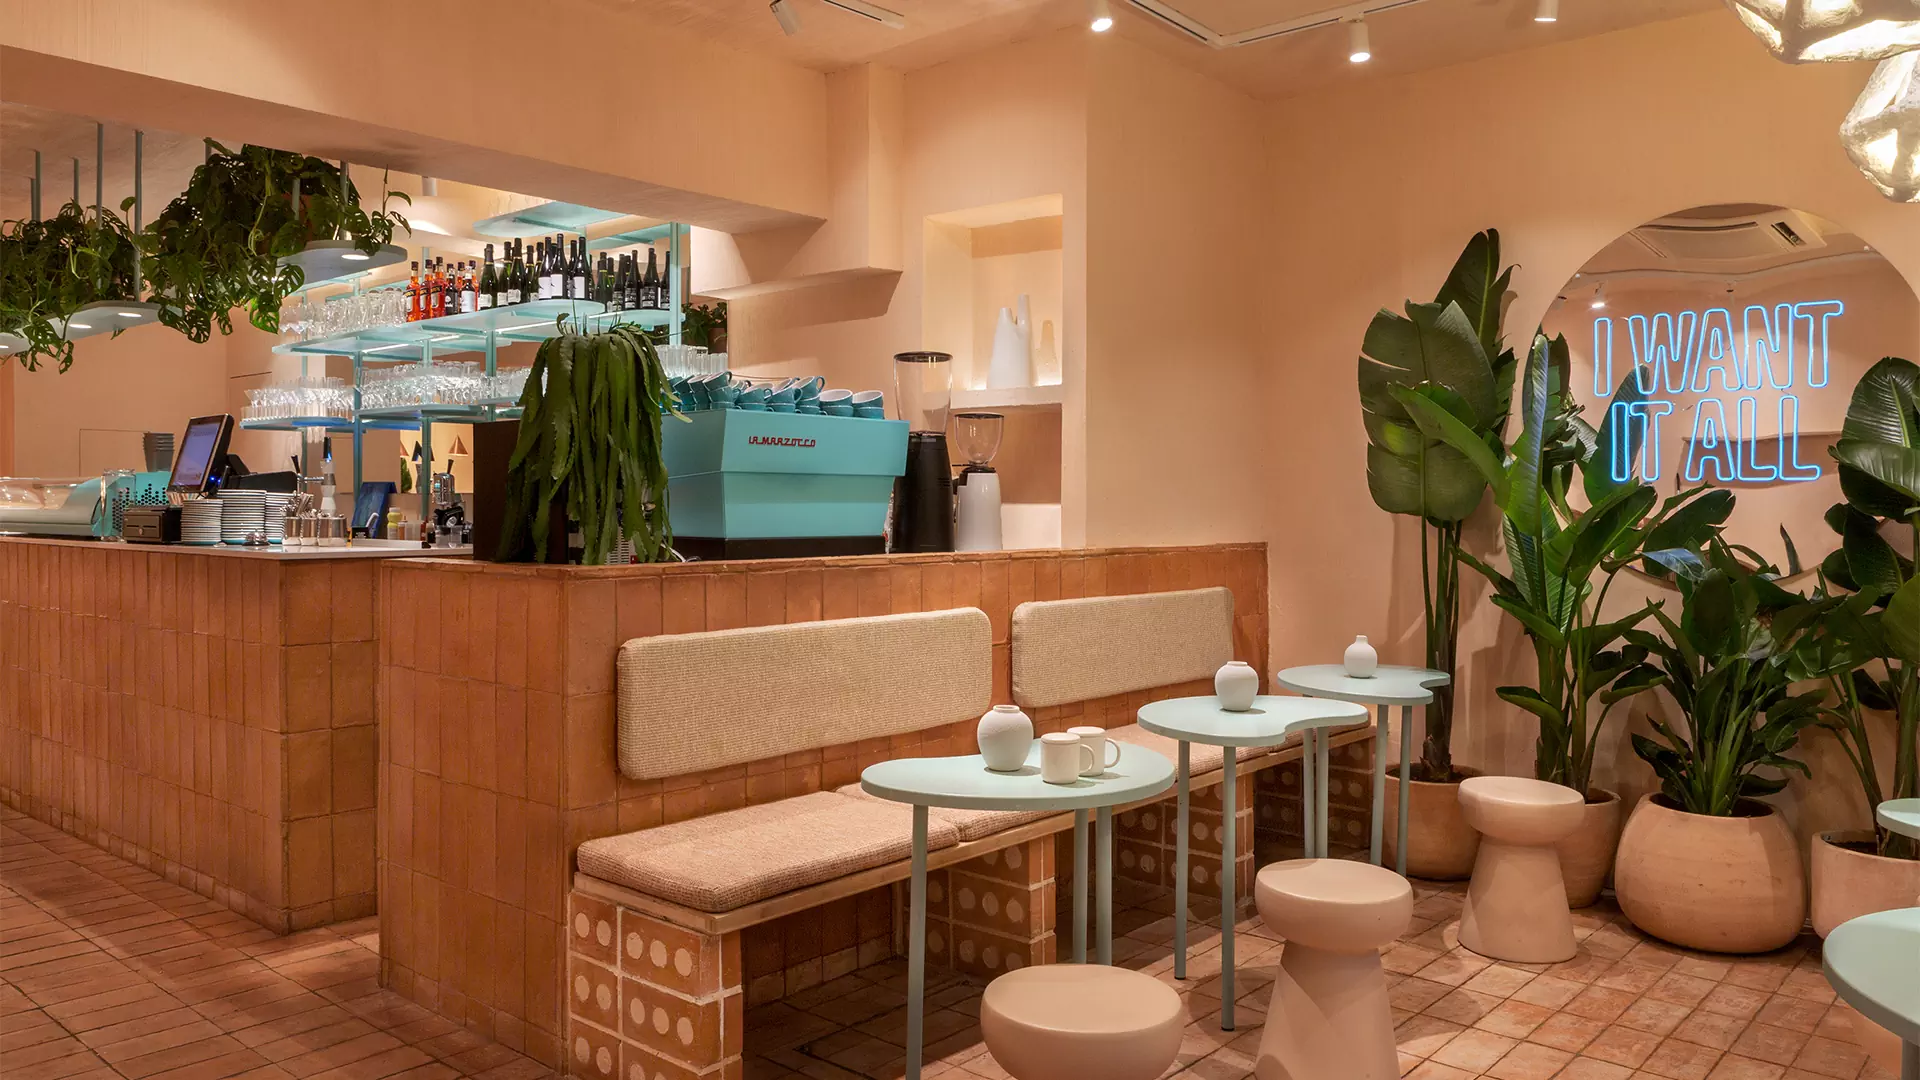 Терракота, авторский свет и живые растения в интерьере кофейни в Барселоне — проект Дарьи Нужной